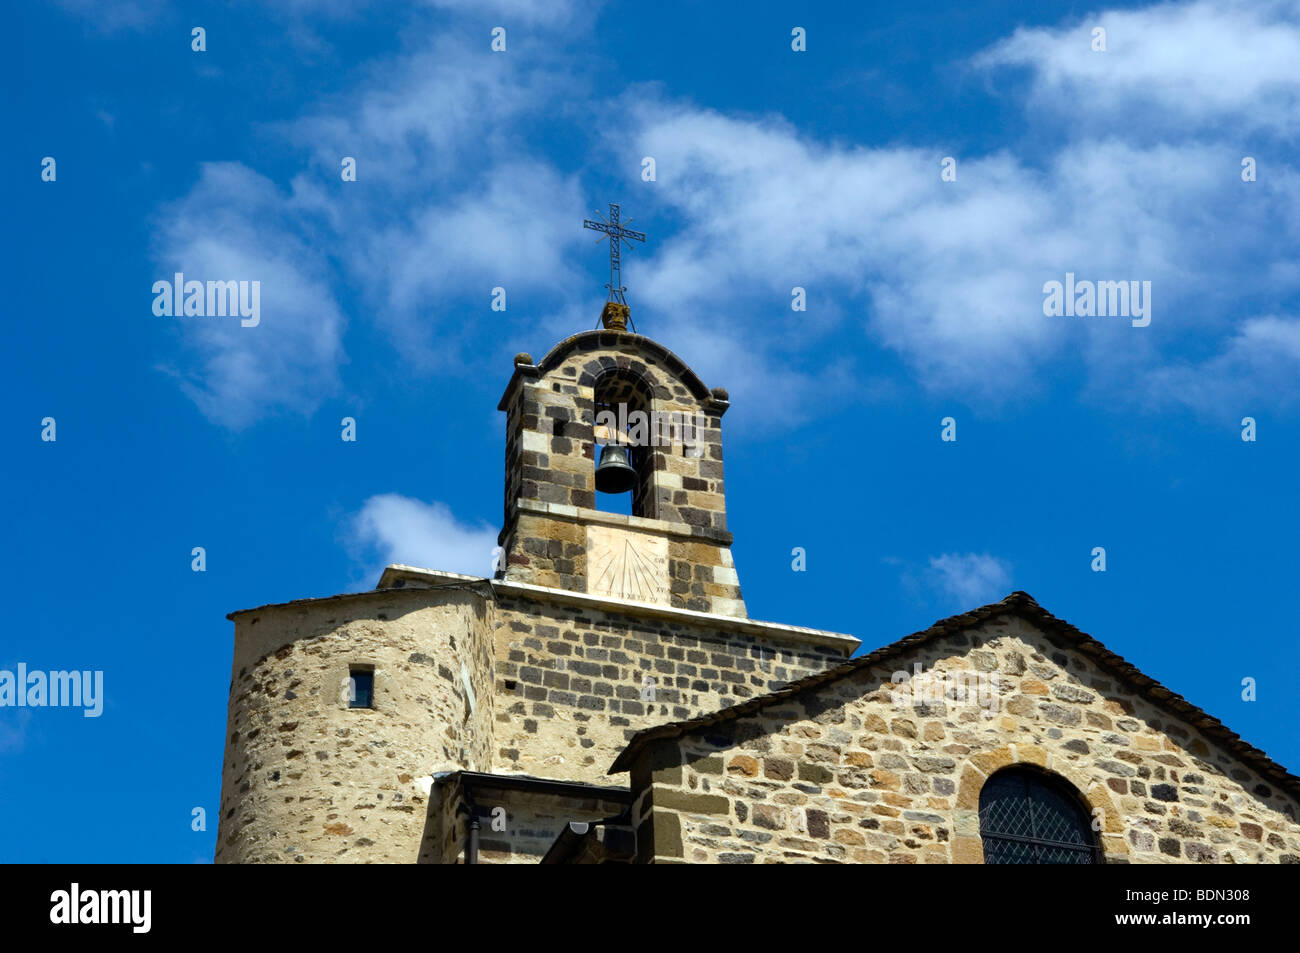 Dettaglio del campanile della chiesa Foto Stock